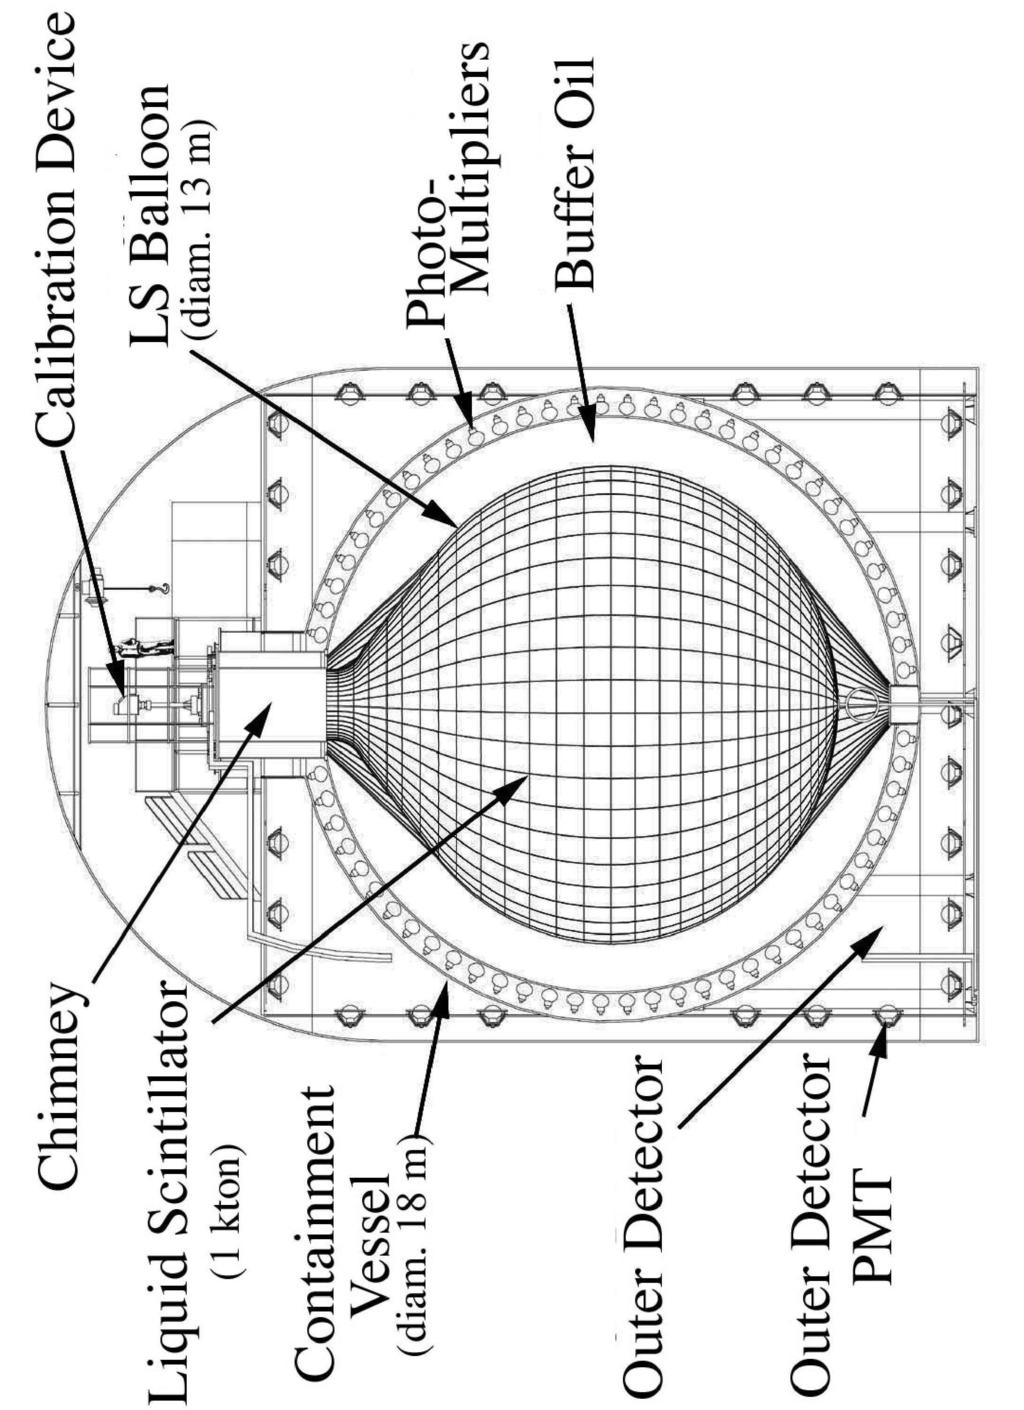 Figure 1: Schematic diagram of the KamLAND detector.